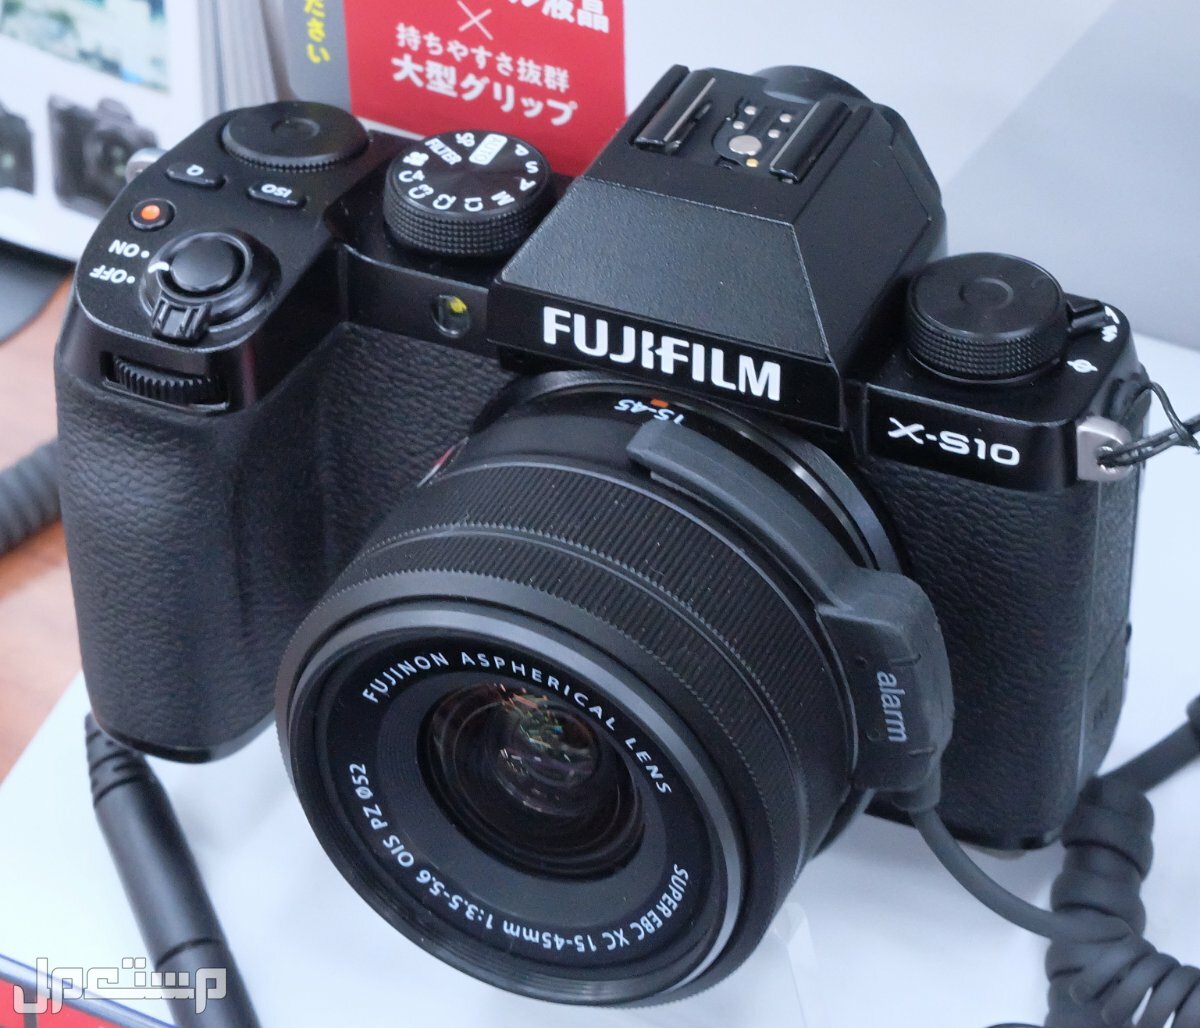 مواصفات ومميزات وعيوب كاميرات التصوير فوجي فيلم في السودان مواصفات كاميرا Fujifilm X-S10